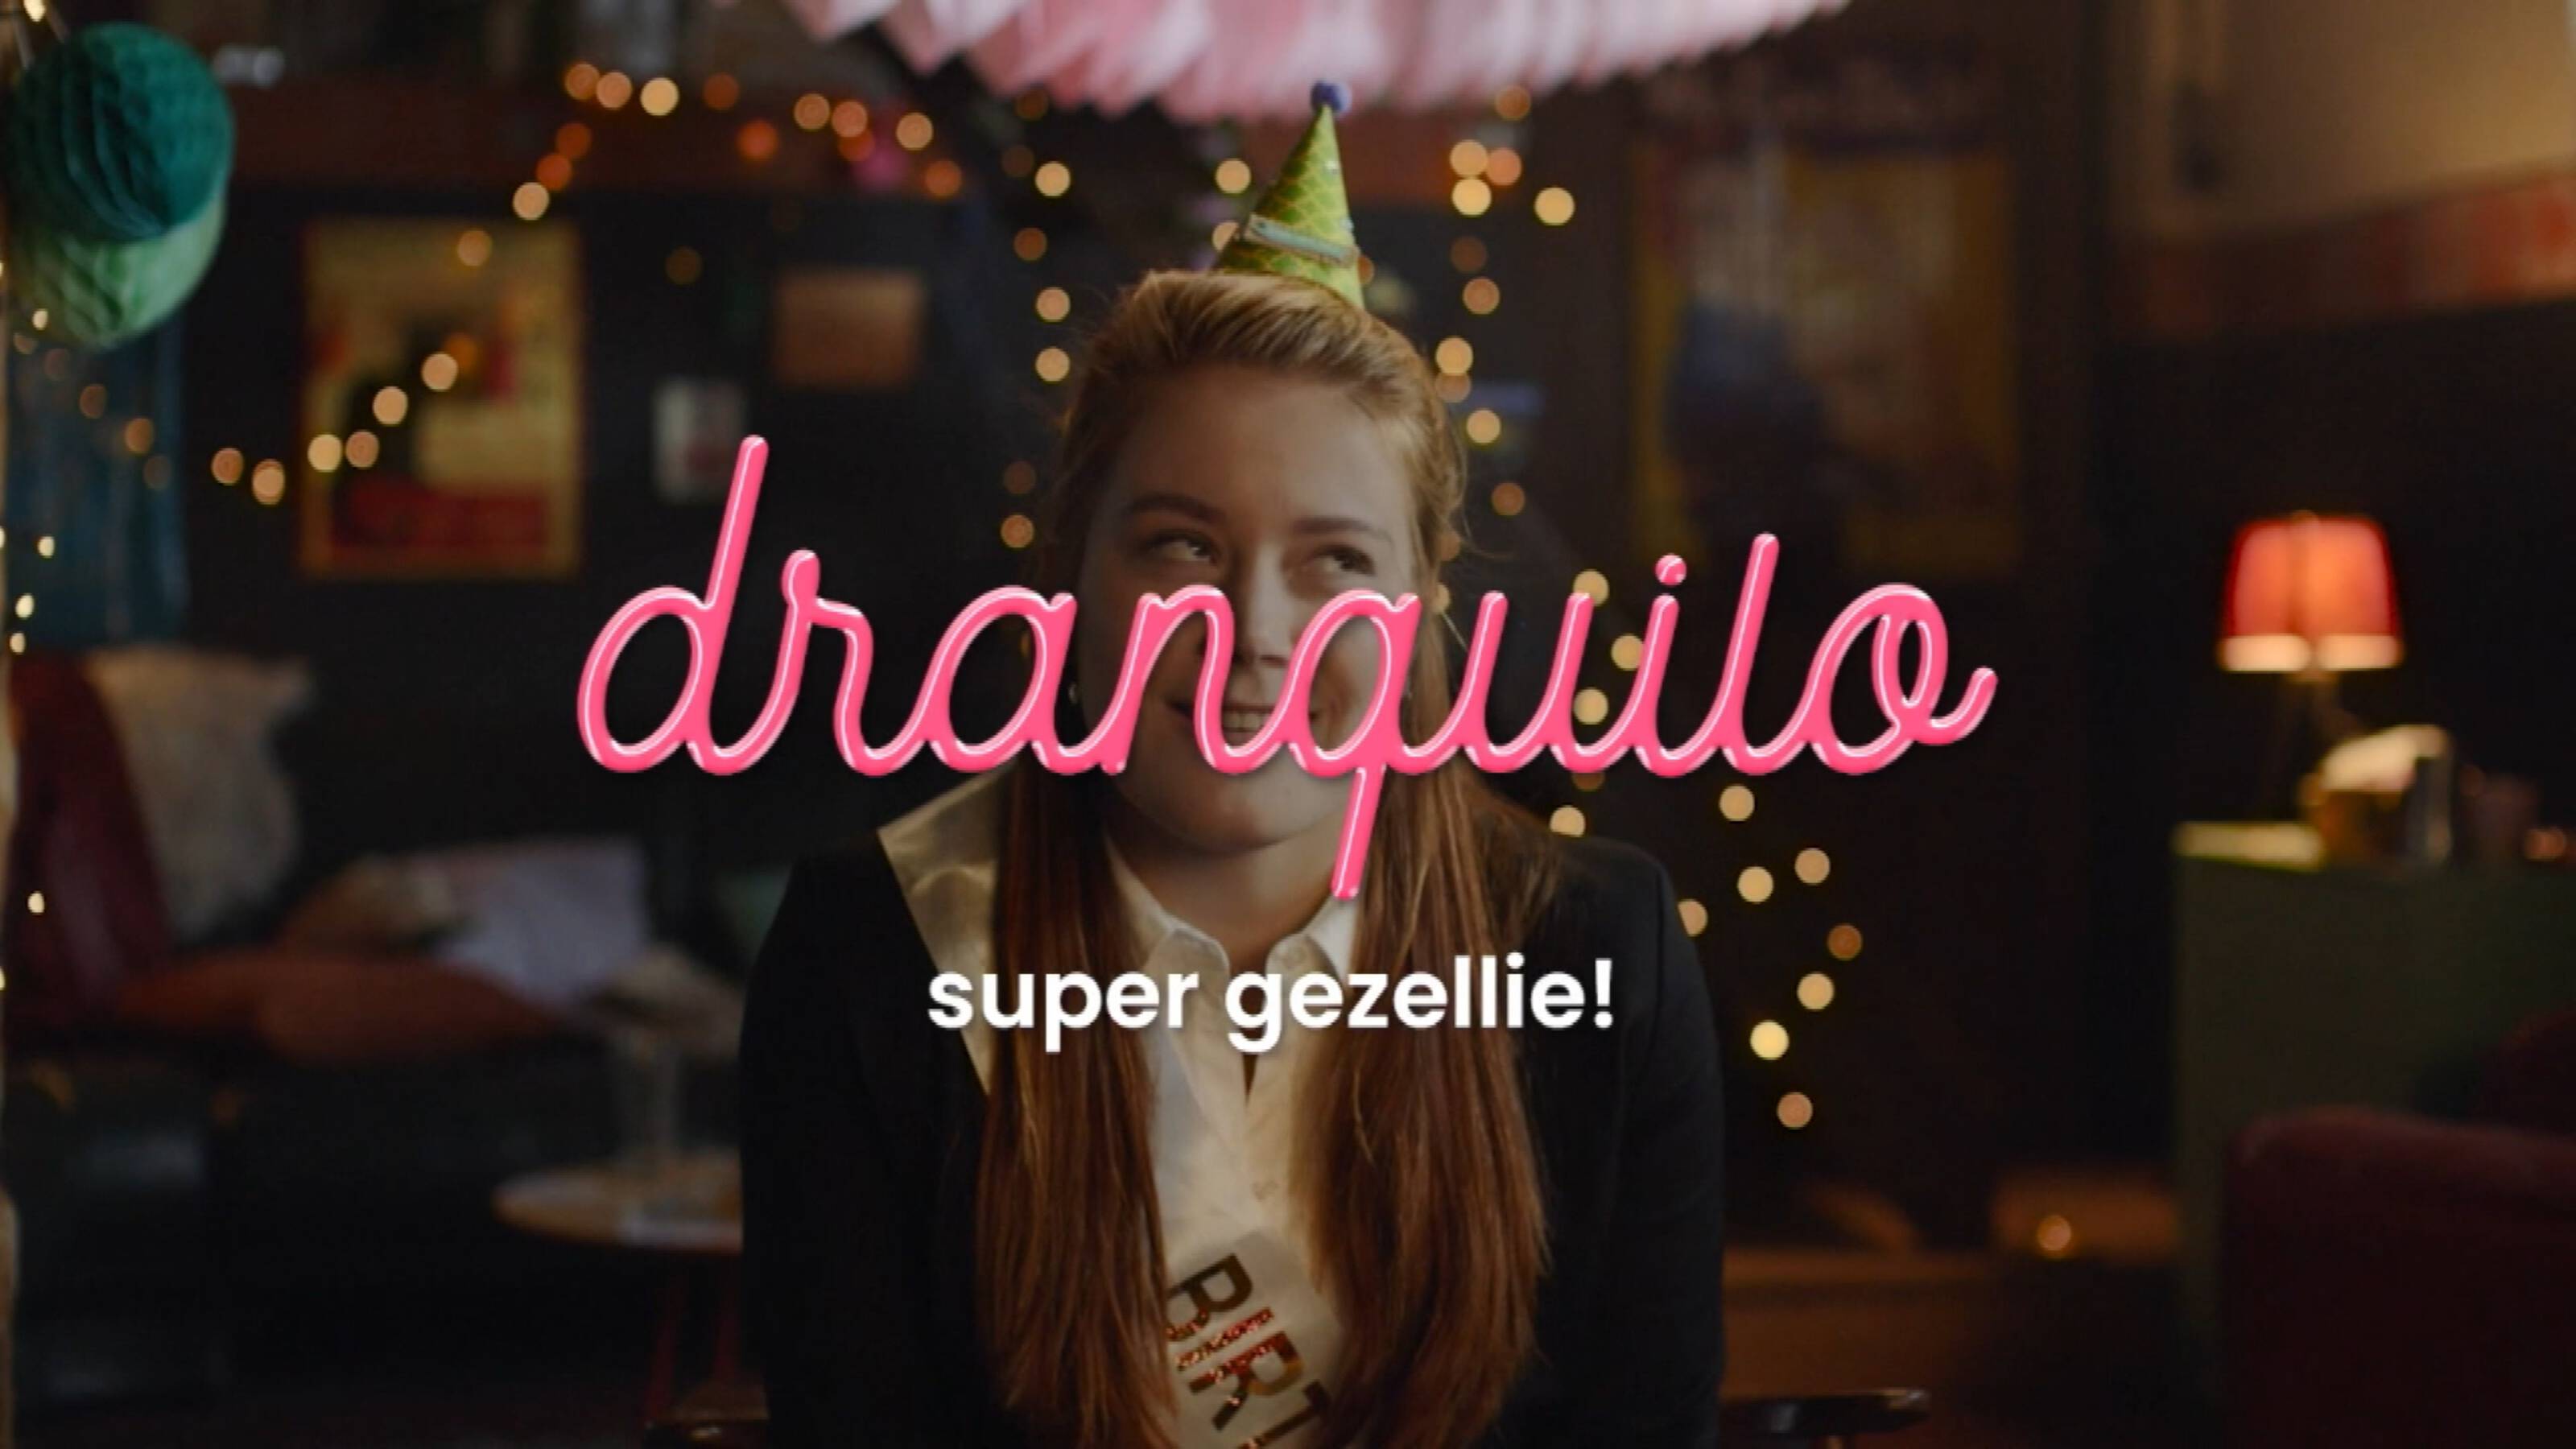 [DPG Grow] Campagne Dranquilo helpt om aan te geven dat je niet drinkt